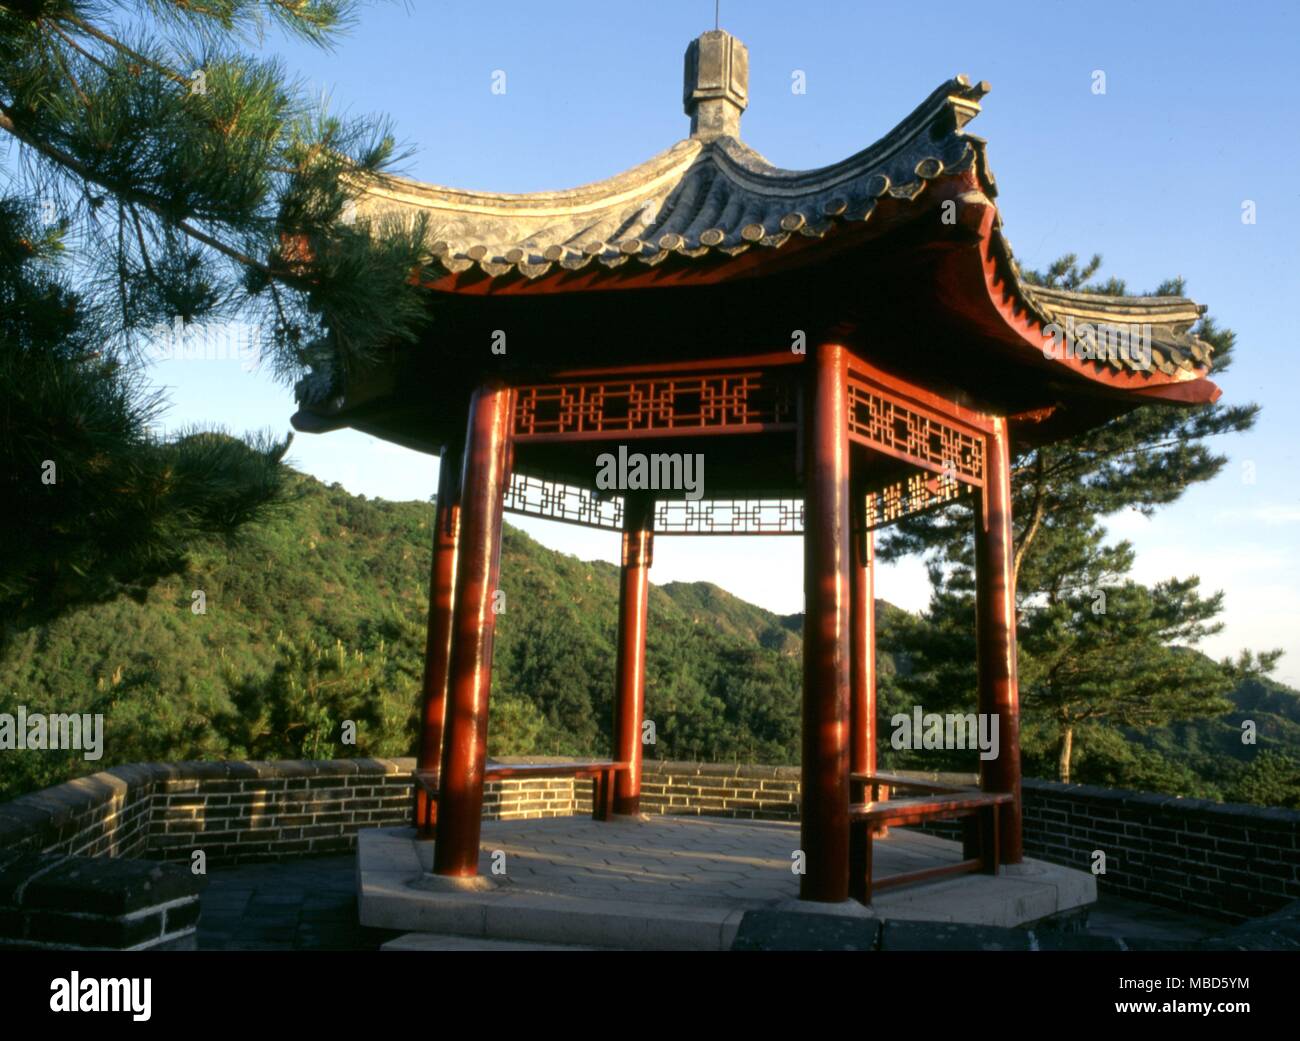 Il Feng Shui Il Padiglione Cinese sulla collina, il suo modulo completando il ' Dragon ' forma di collina come richiesto dalla perfetta Feng Shui. Il padiglione è situato nei pressi della Grande Muraglia, a nord di Pechino Foto Stock